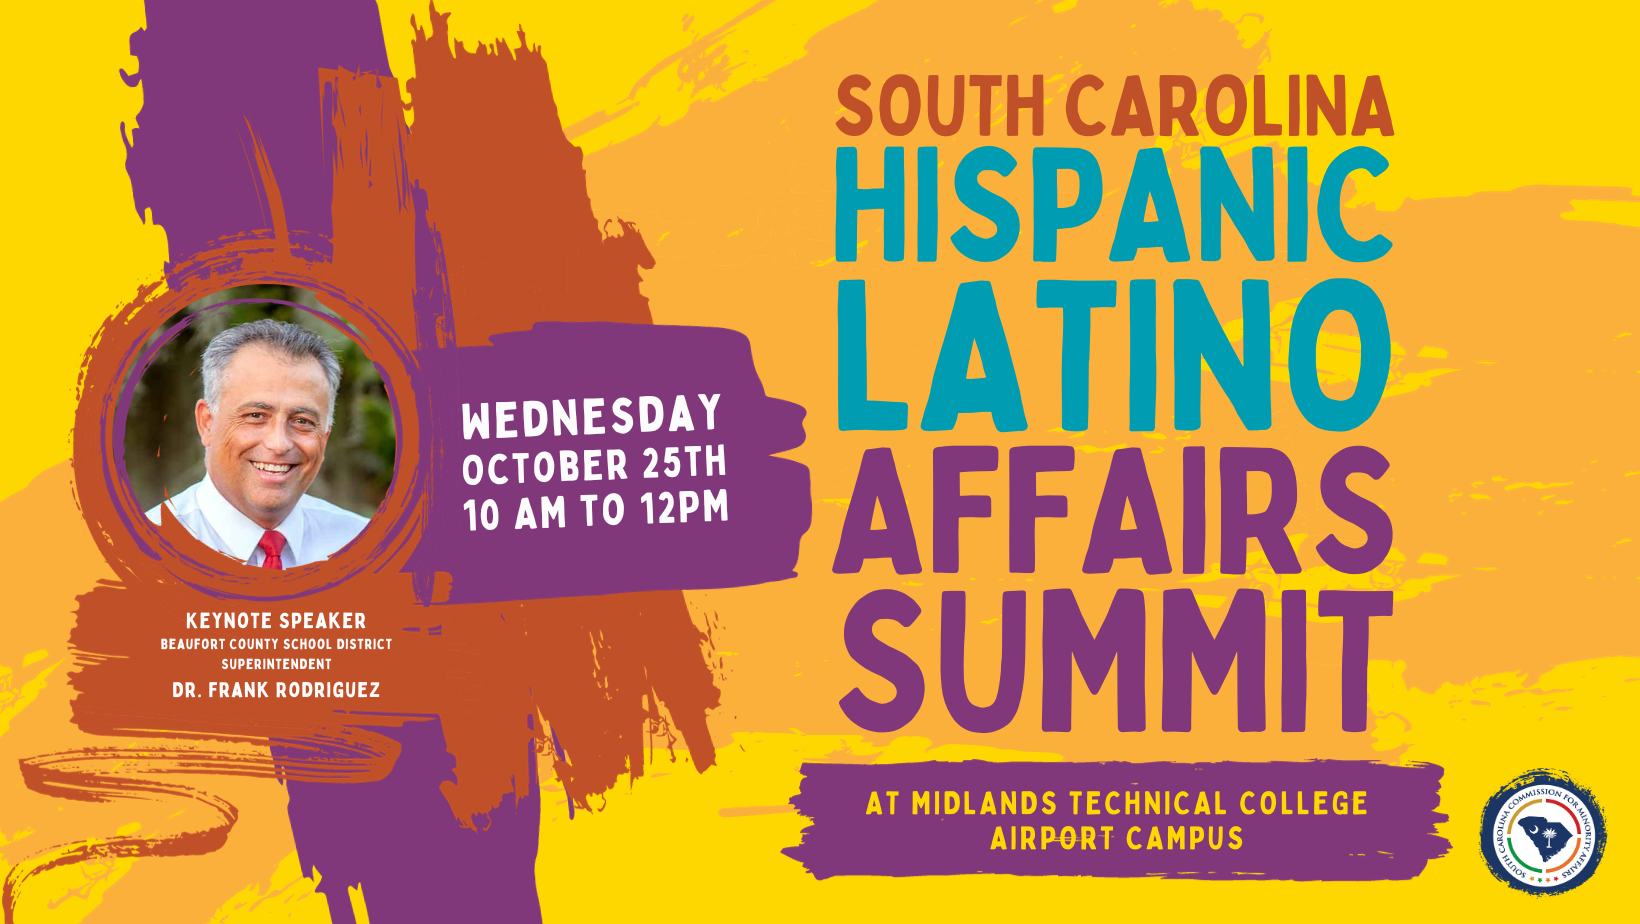 SC Hispanic Latino Affairs Summit